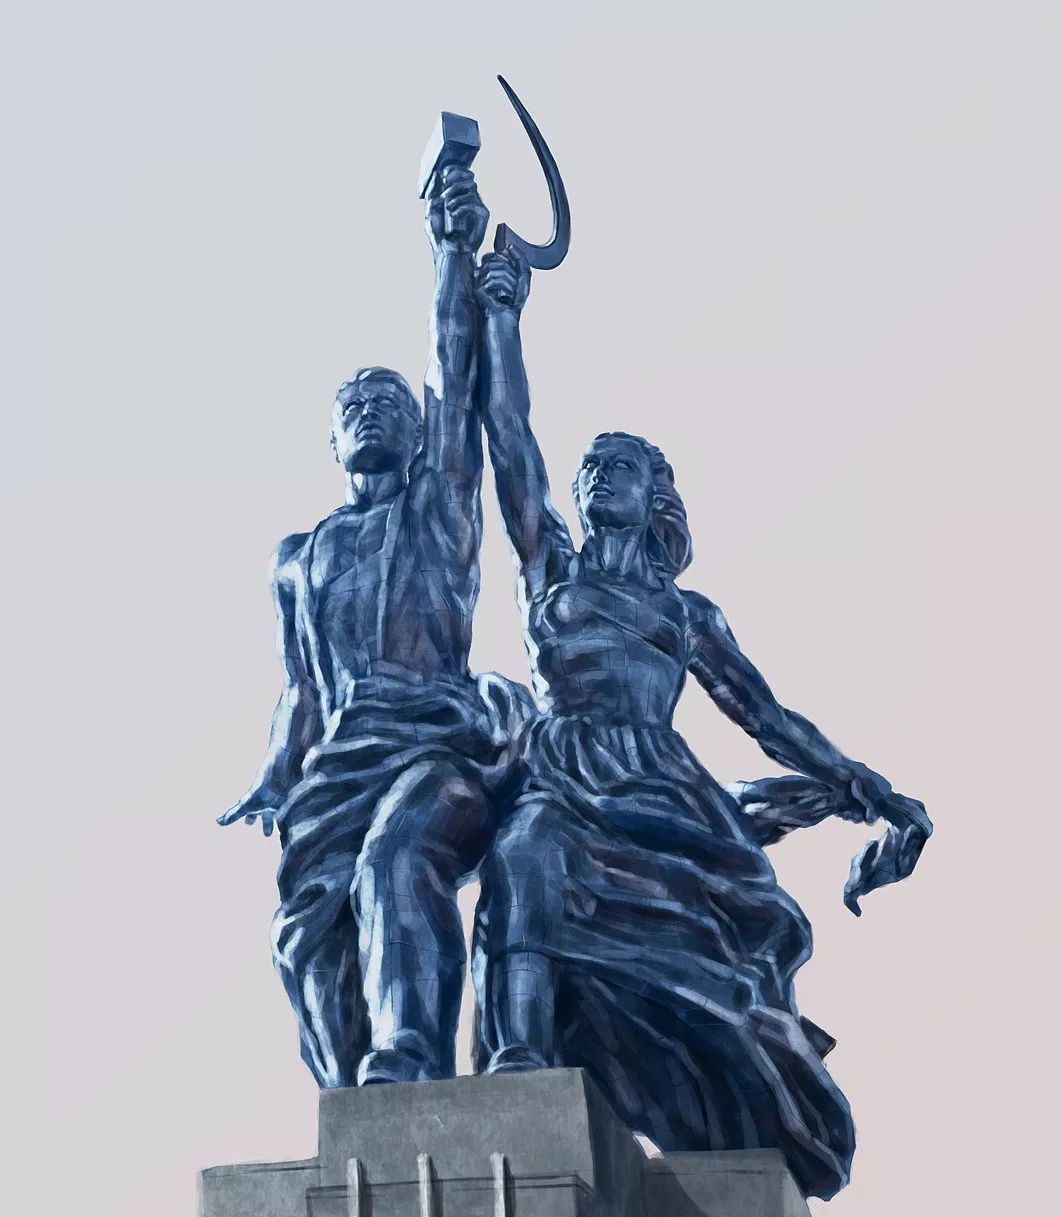 在上个世纪20年代巴黎举办了世界博览会,由穆希娜创作的这尊雕像作为